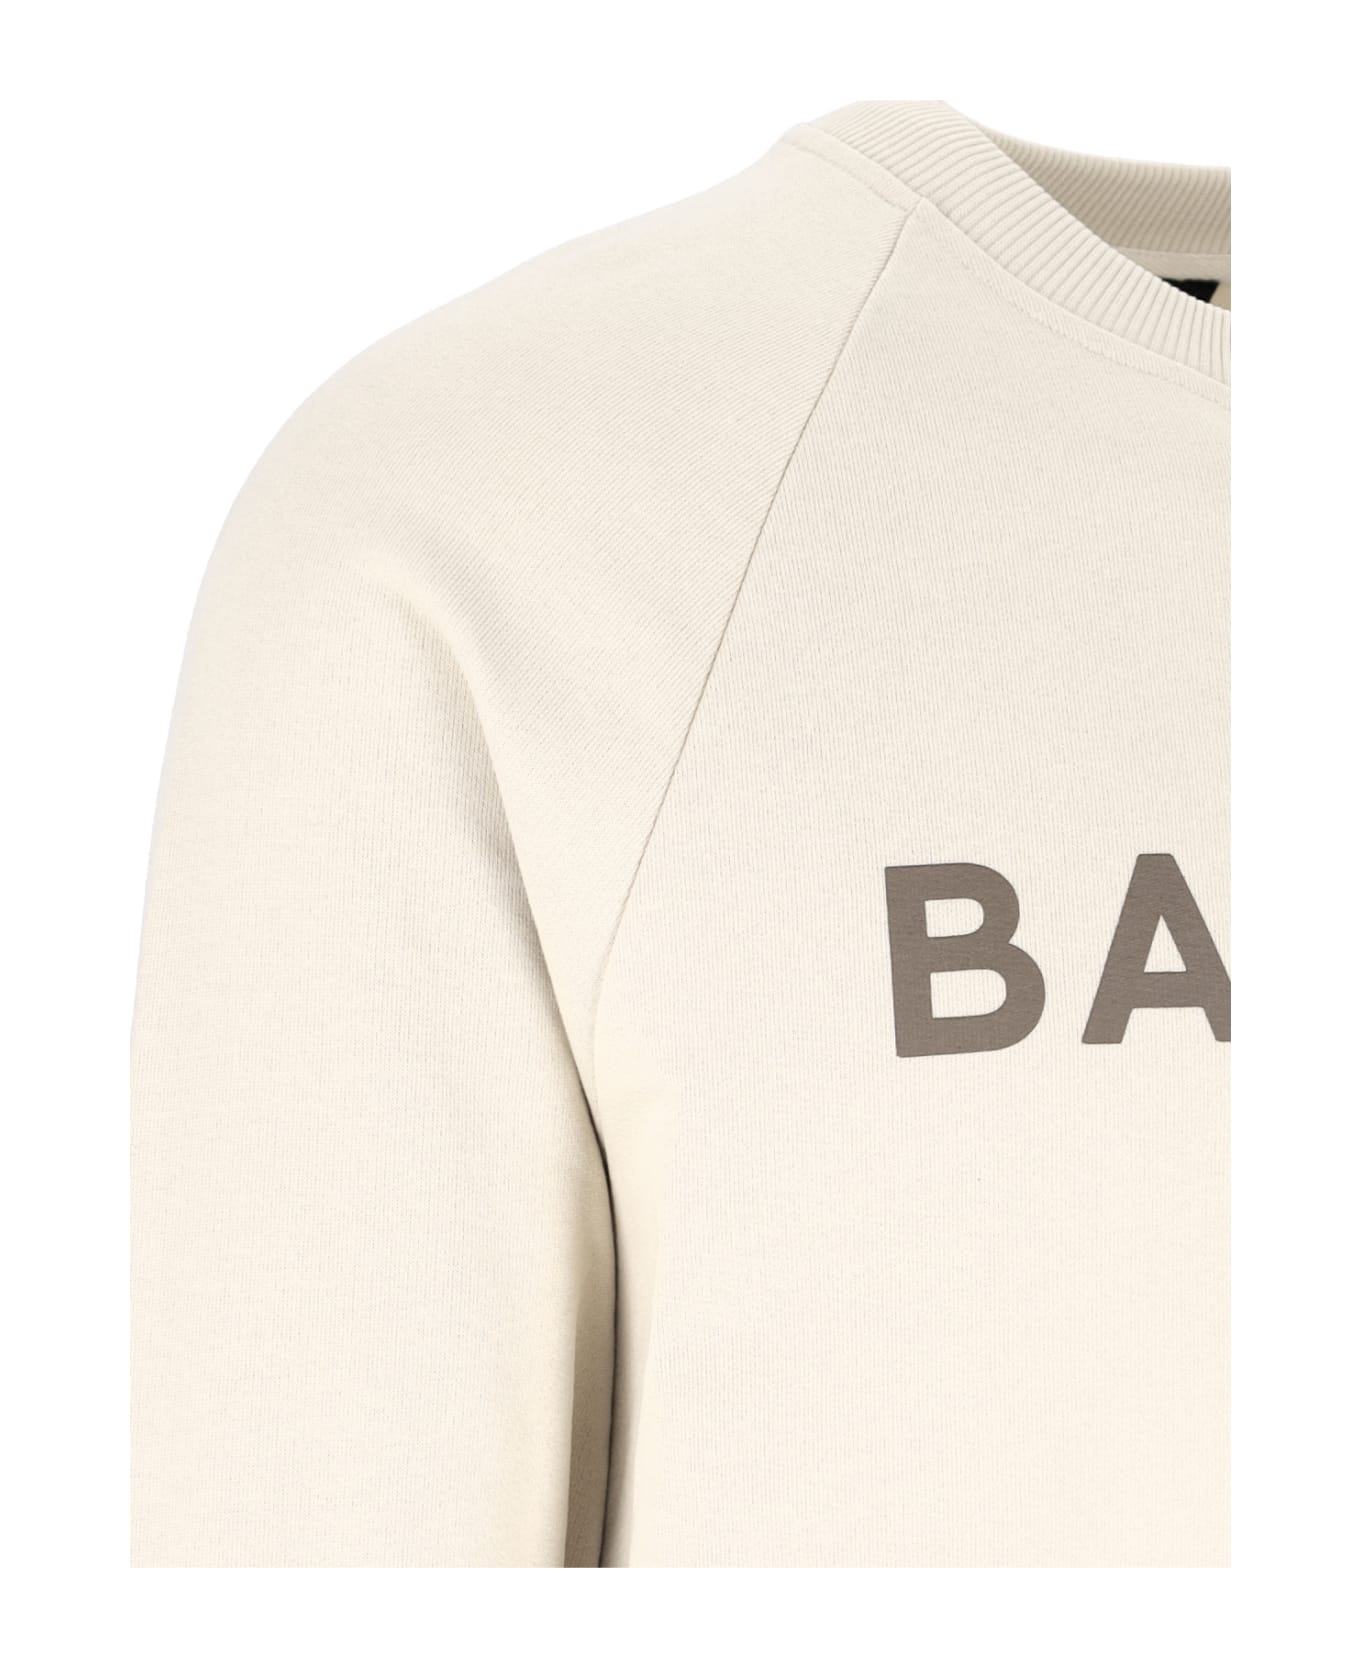 Balmain Logo Printed Crewneck Sweatshirt - White フリース